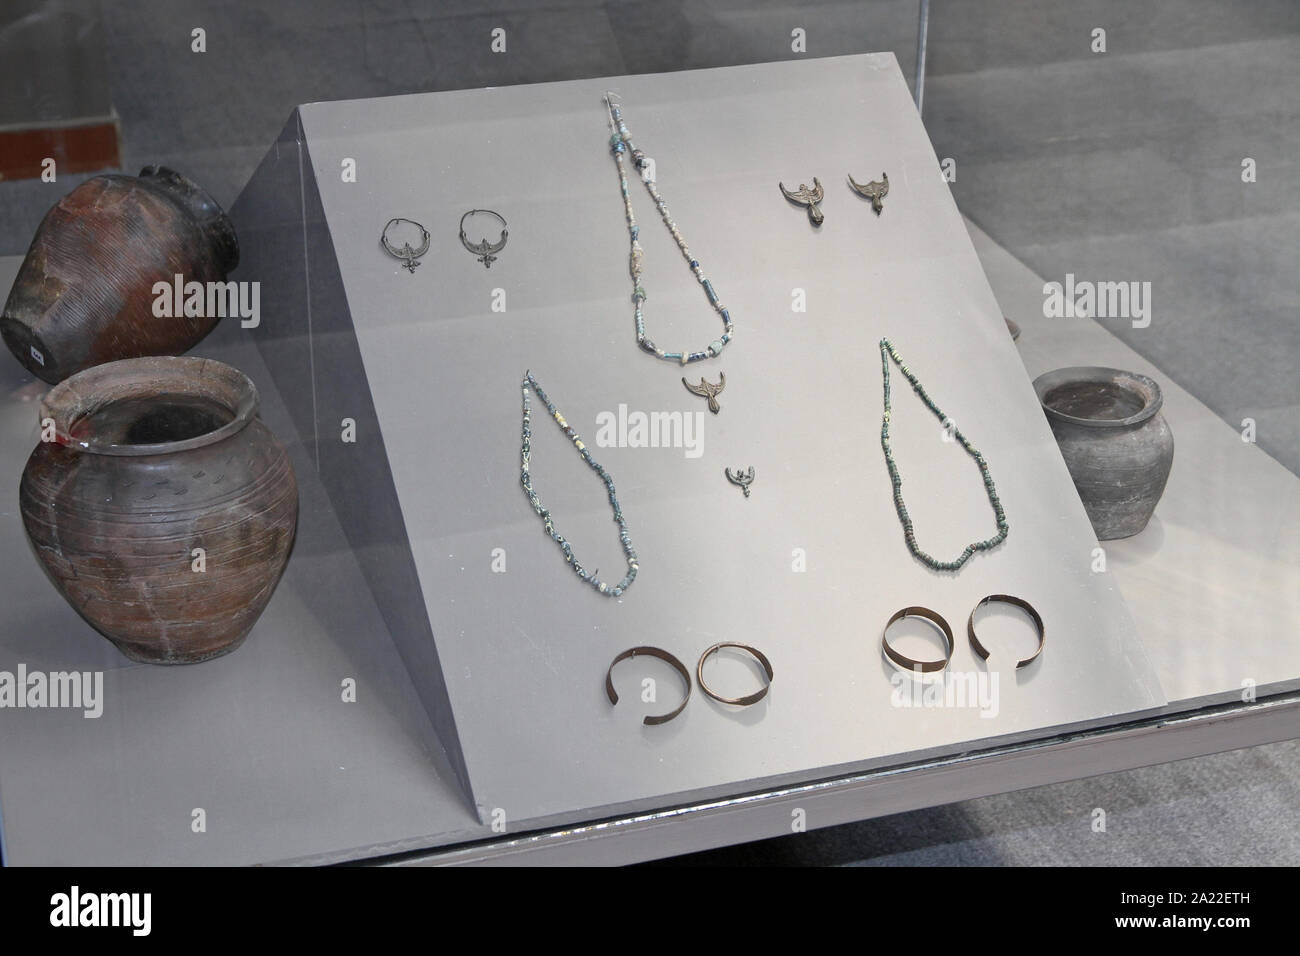 Collection de pots et ancienne capitale romaine, byzantine/bijoux, Musée Archéologique National Djerdap, Beograd, Serbie. Banque D'Images